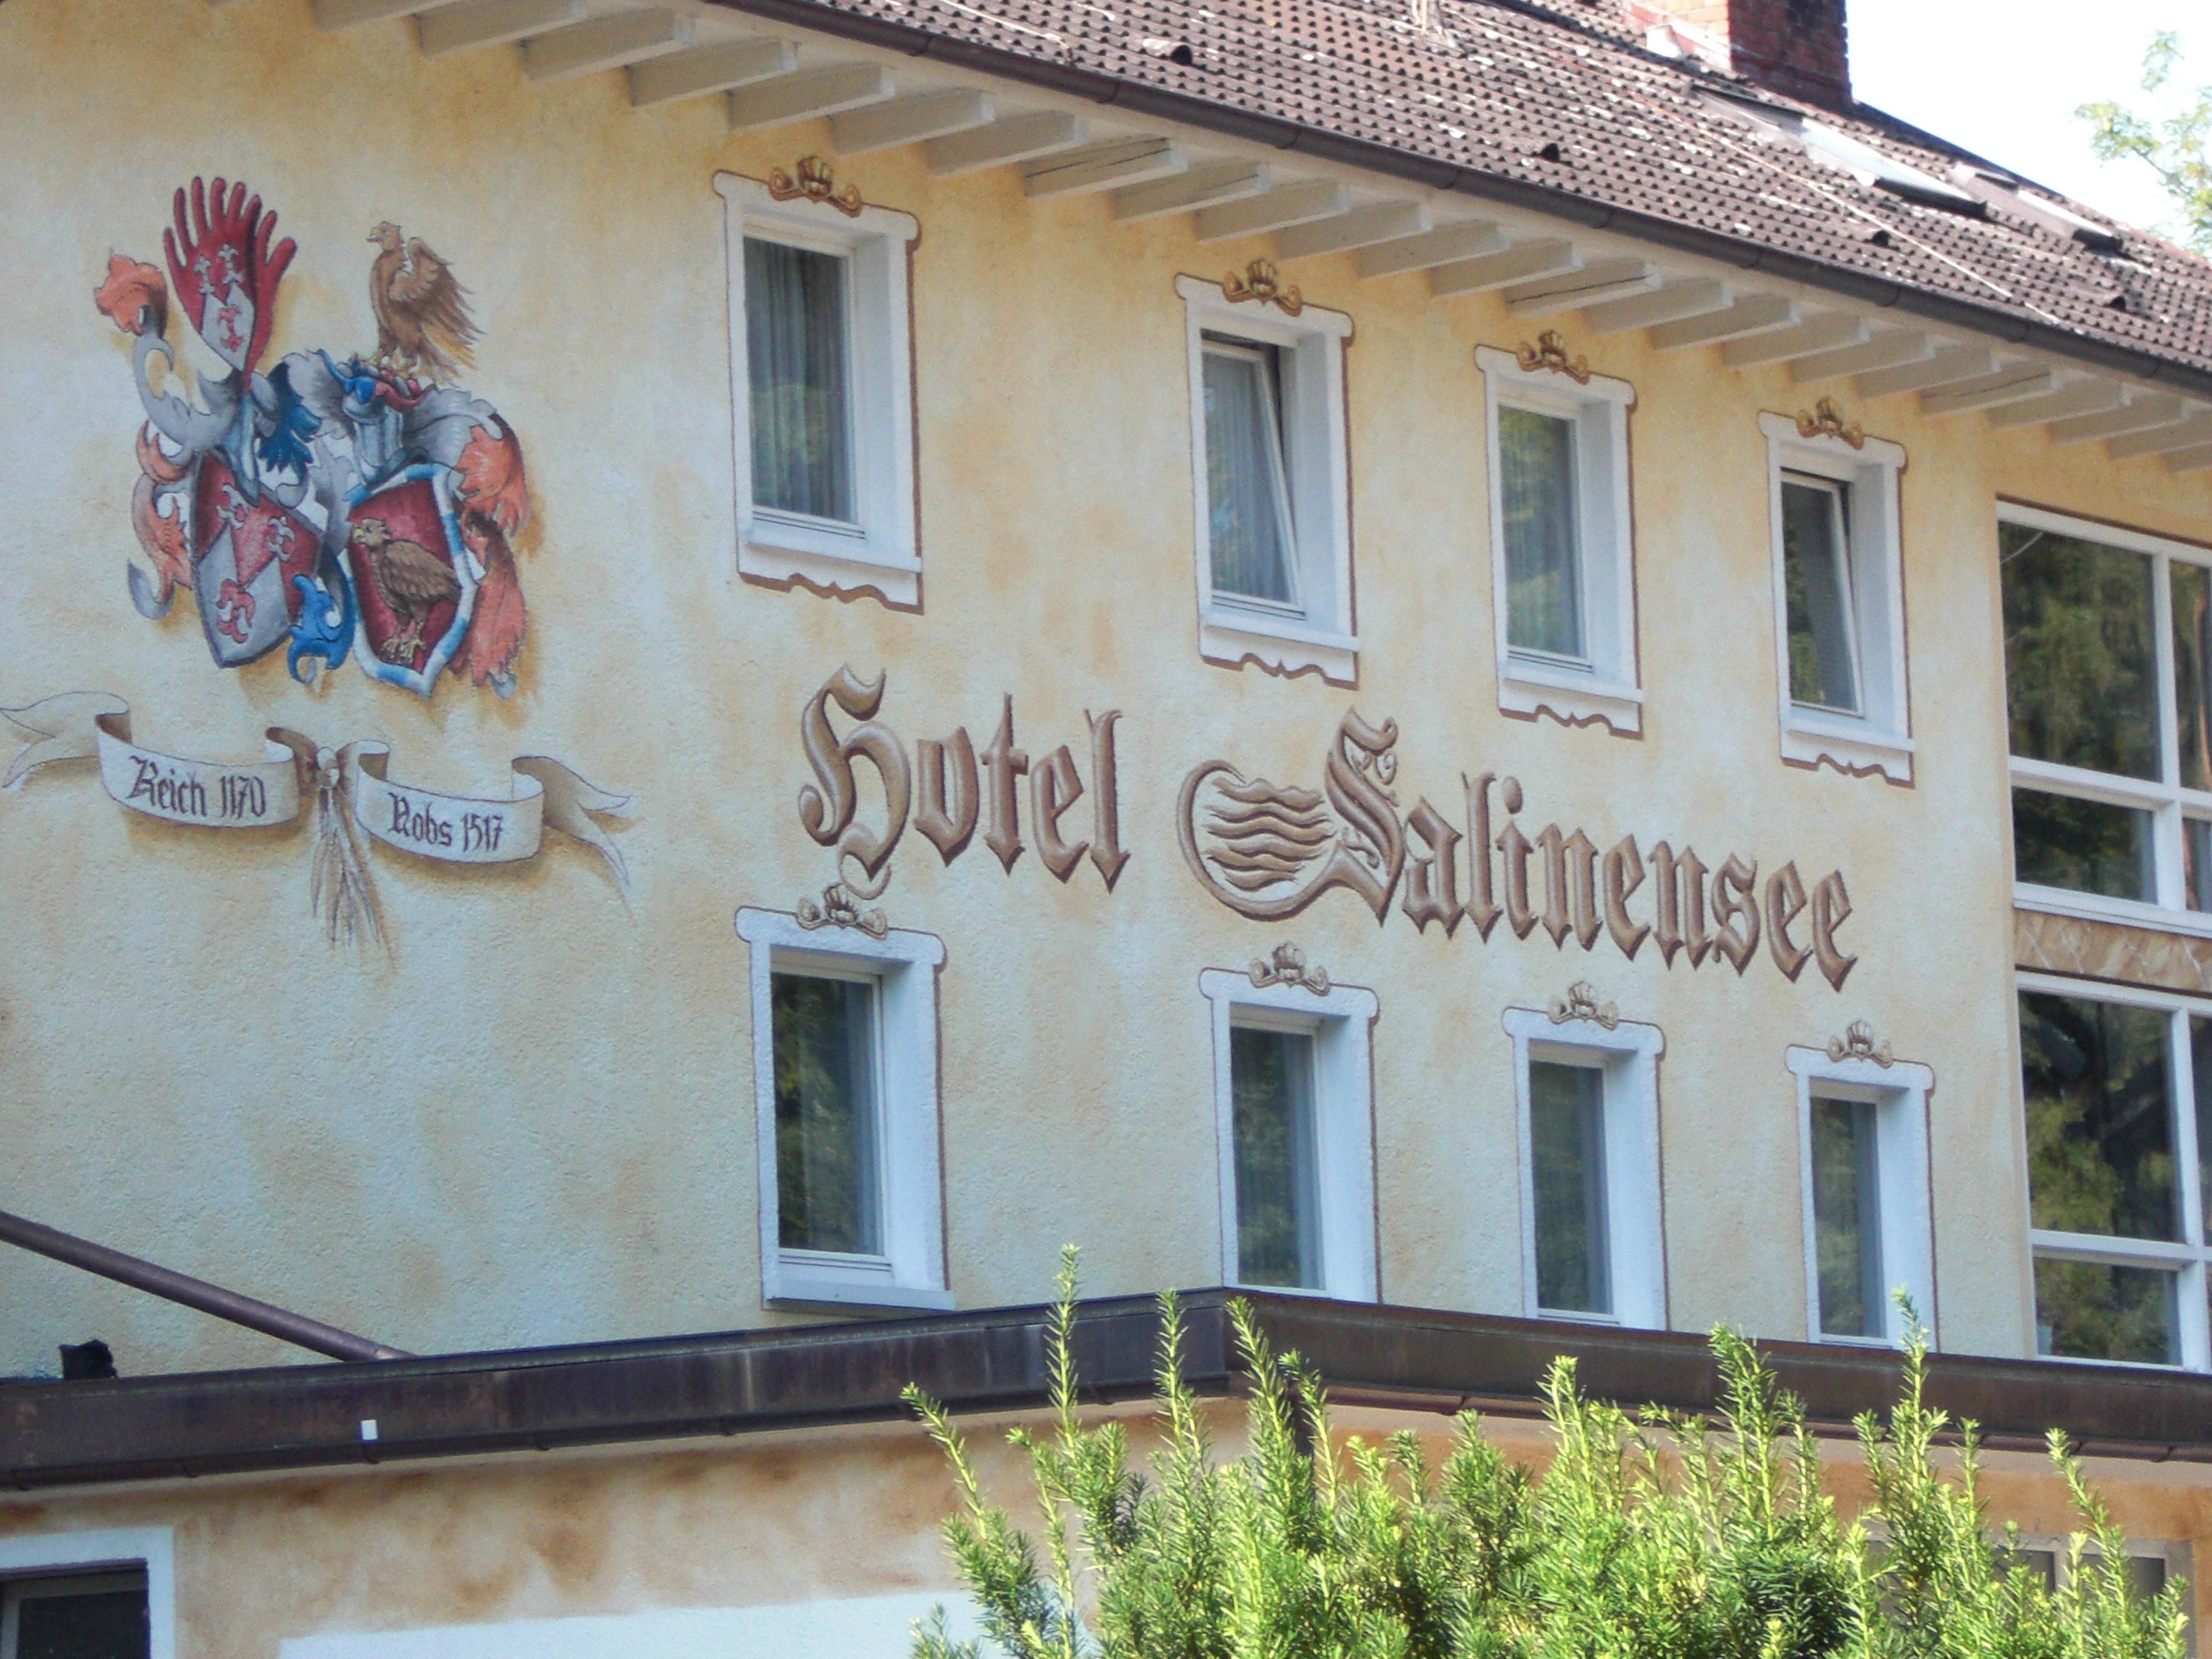 Bild 1 Salinensee Restaurant in Bad Dürrheim